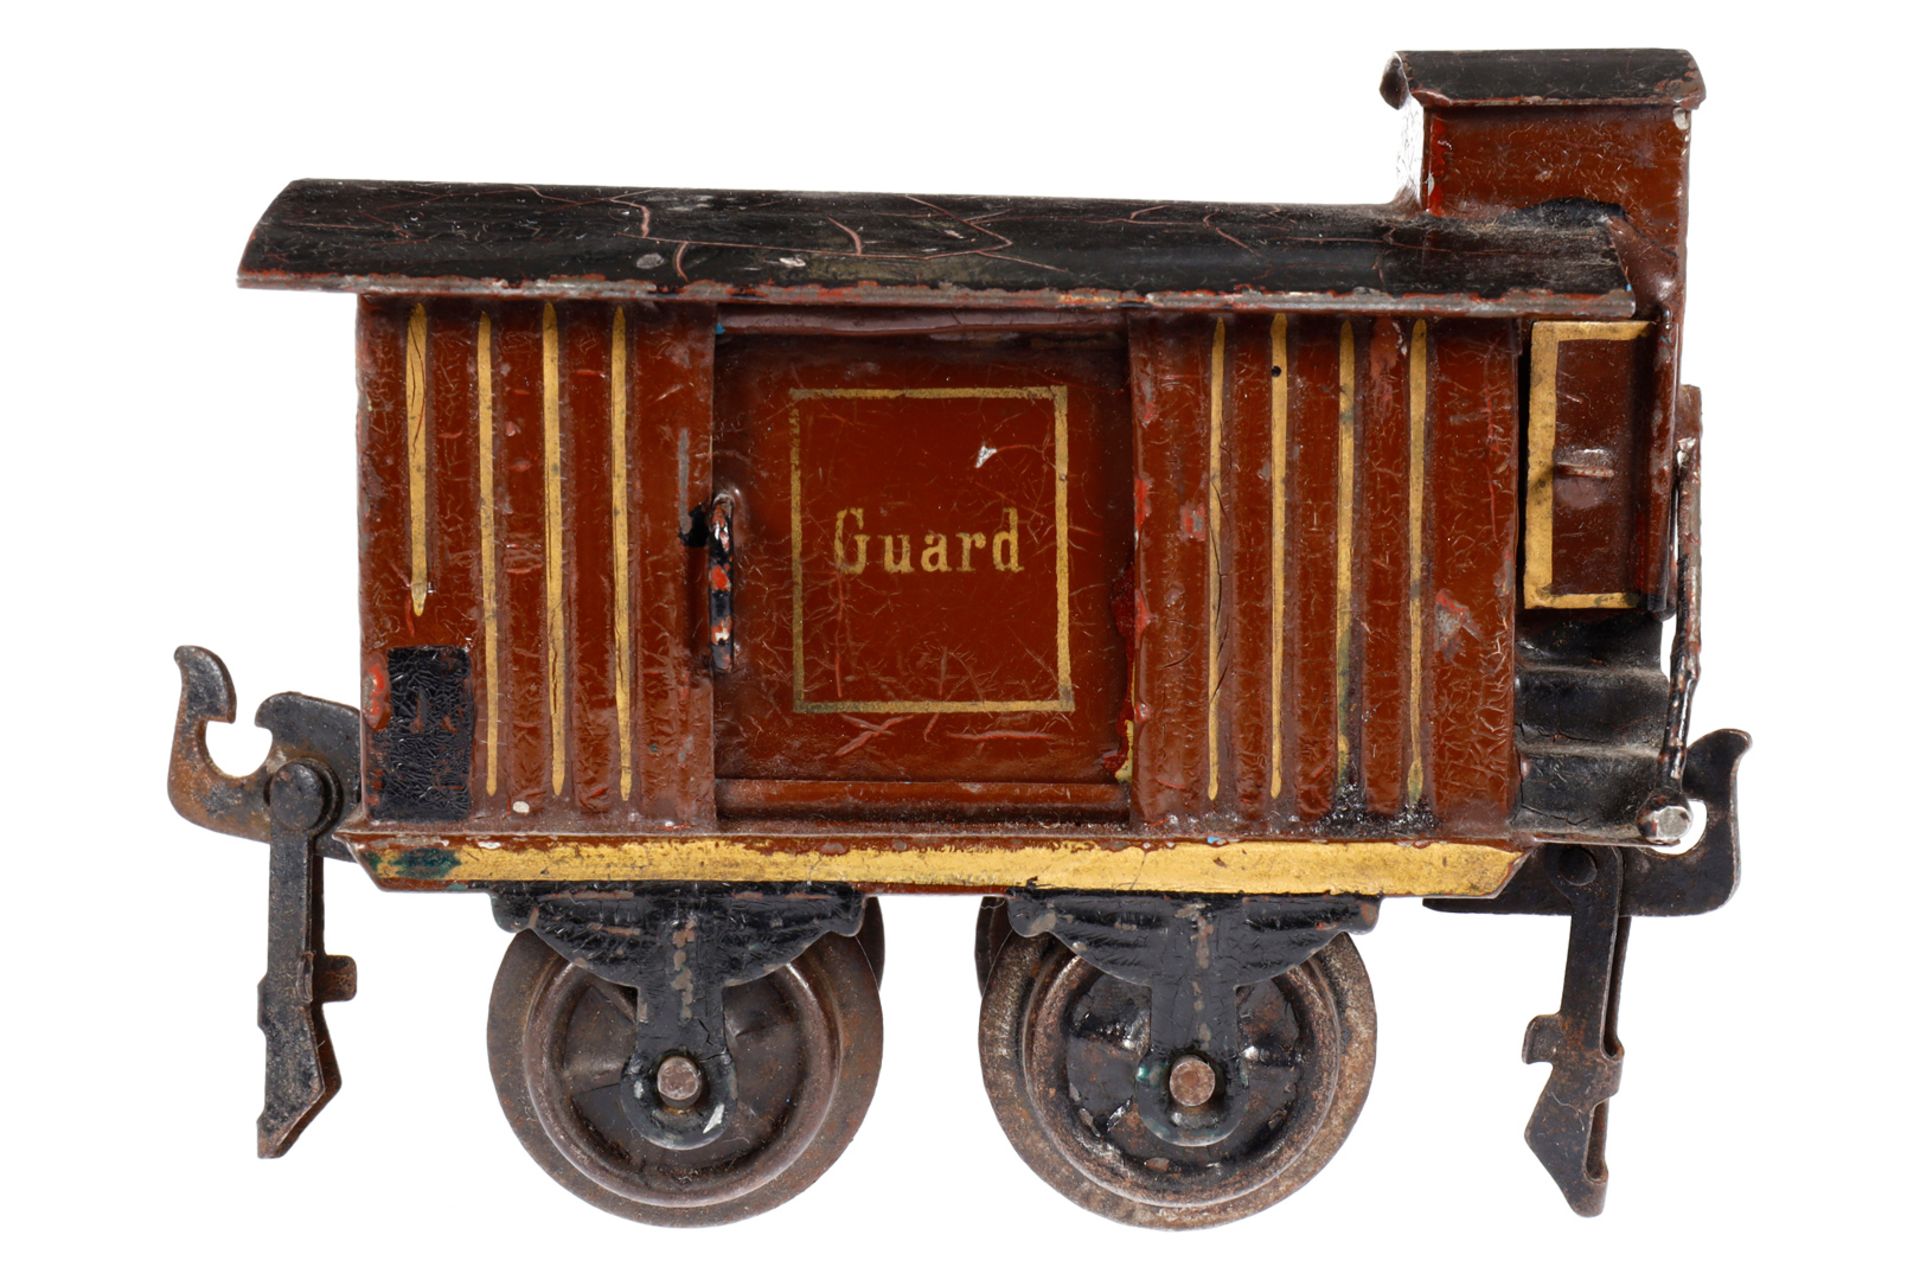 Märklin engl. ged. Güterwagen ”Guard” 1804 MR, Spur 0, uralt, HL, mit BRHh und 2 ST, LS und